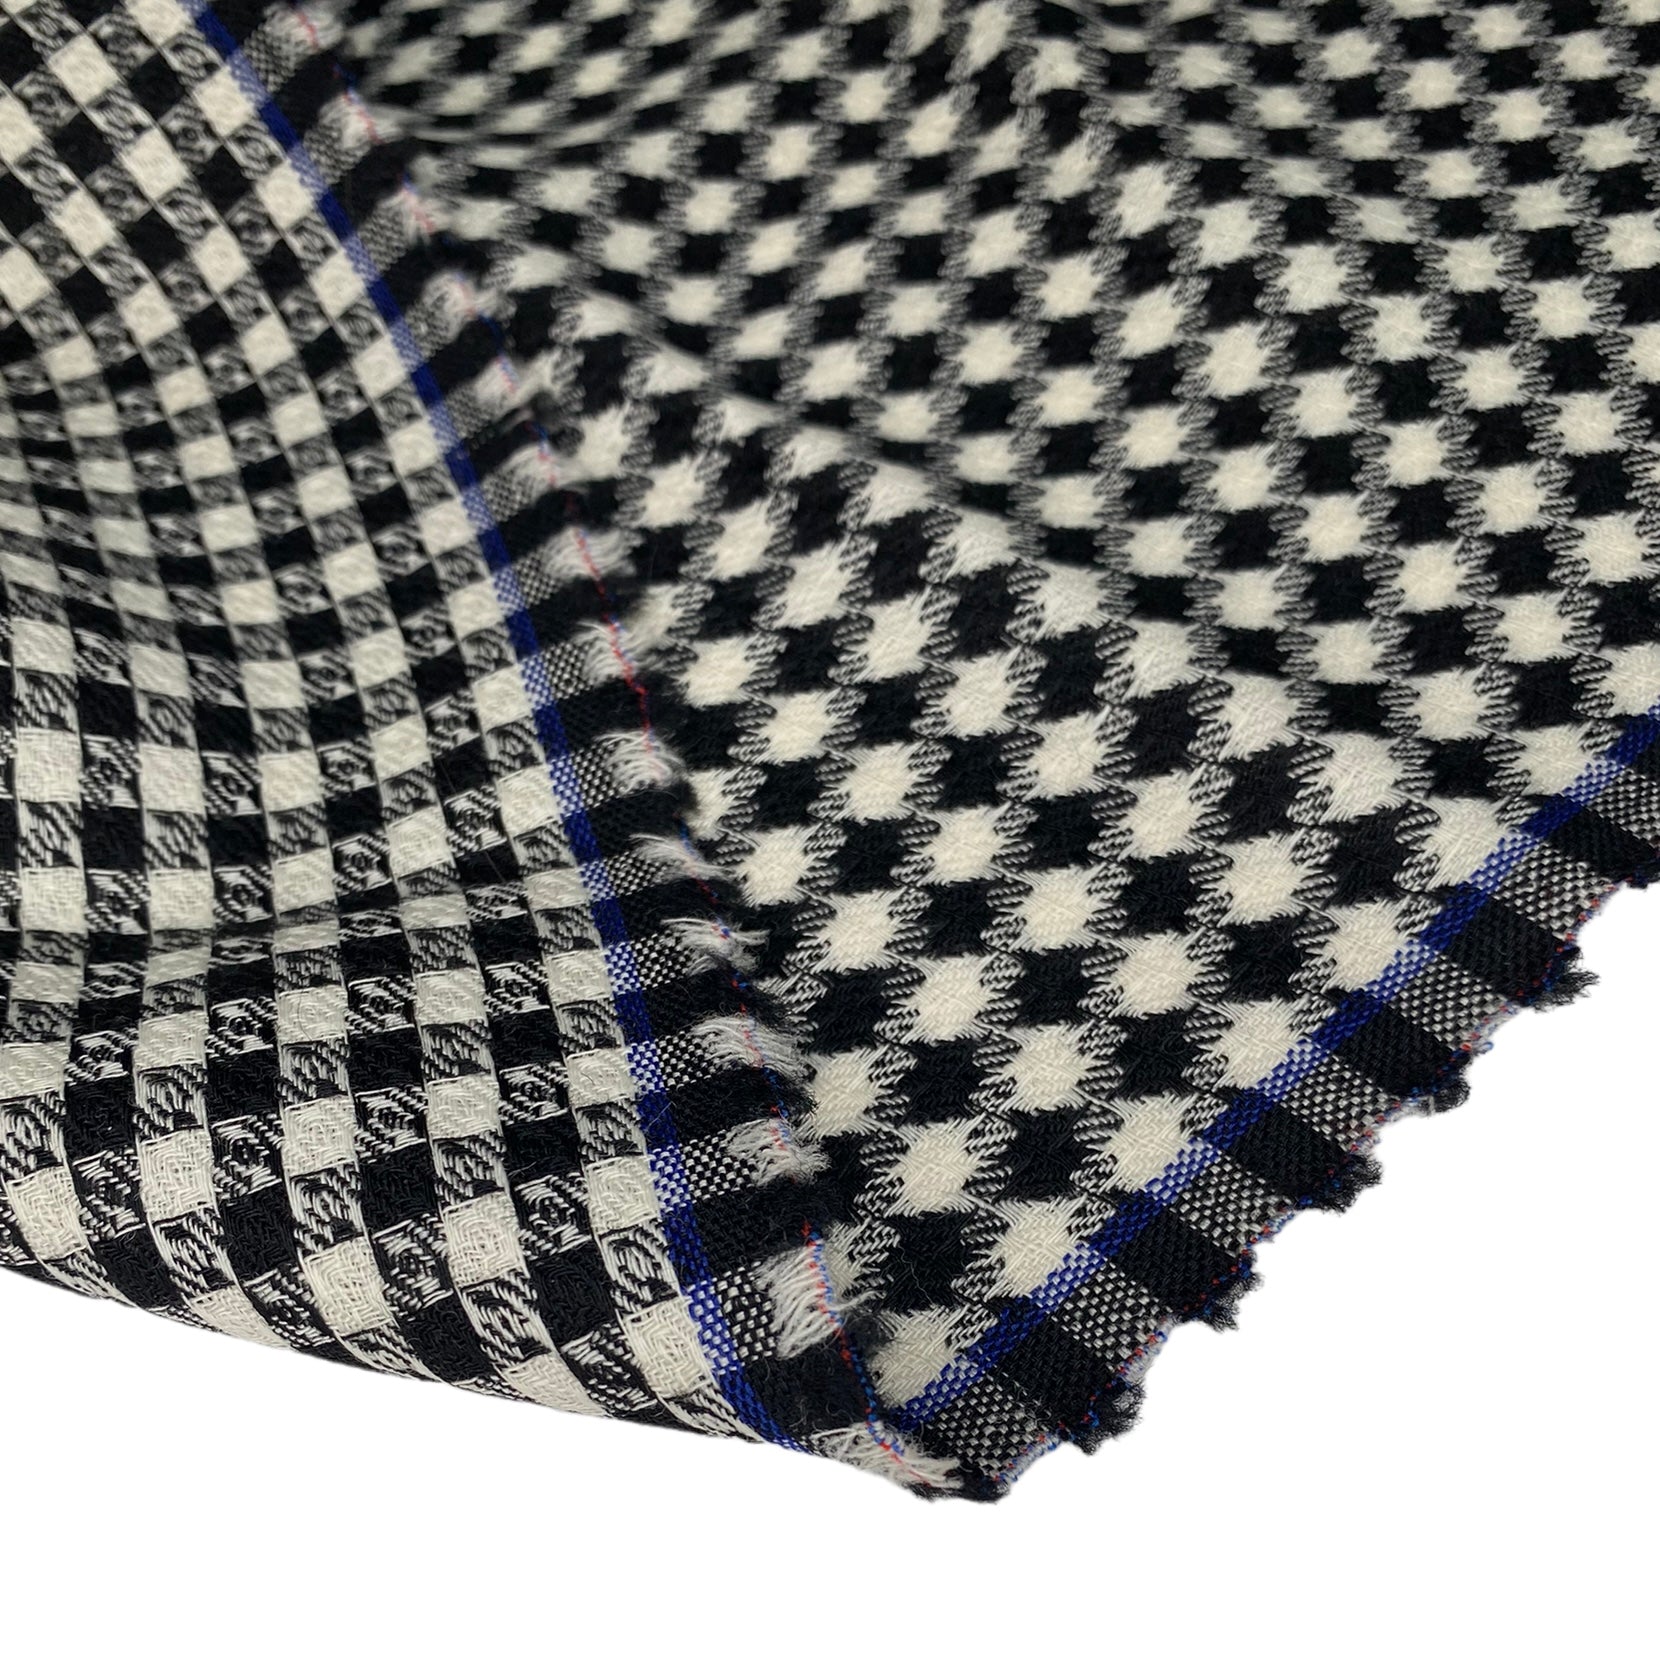 Checkered Wool - Black/White